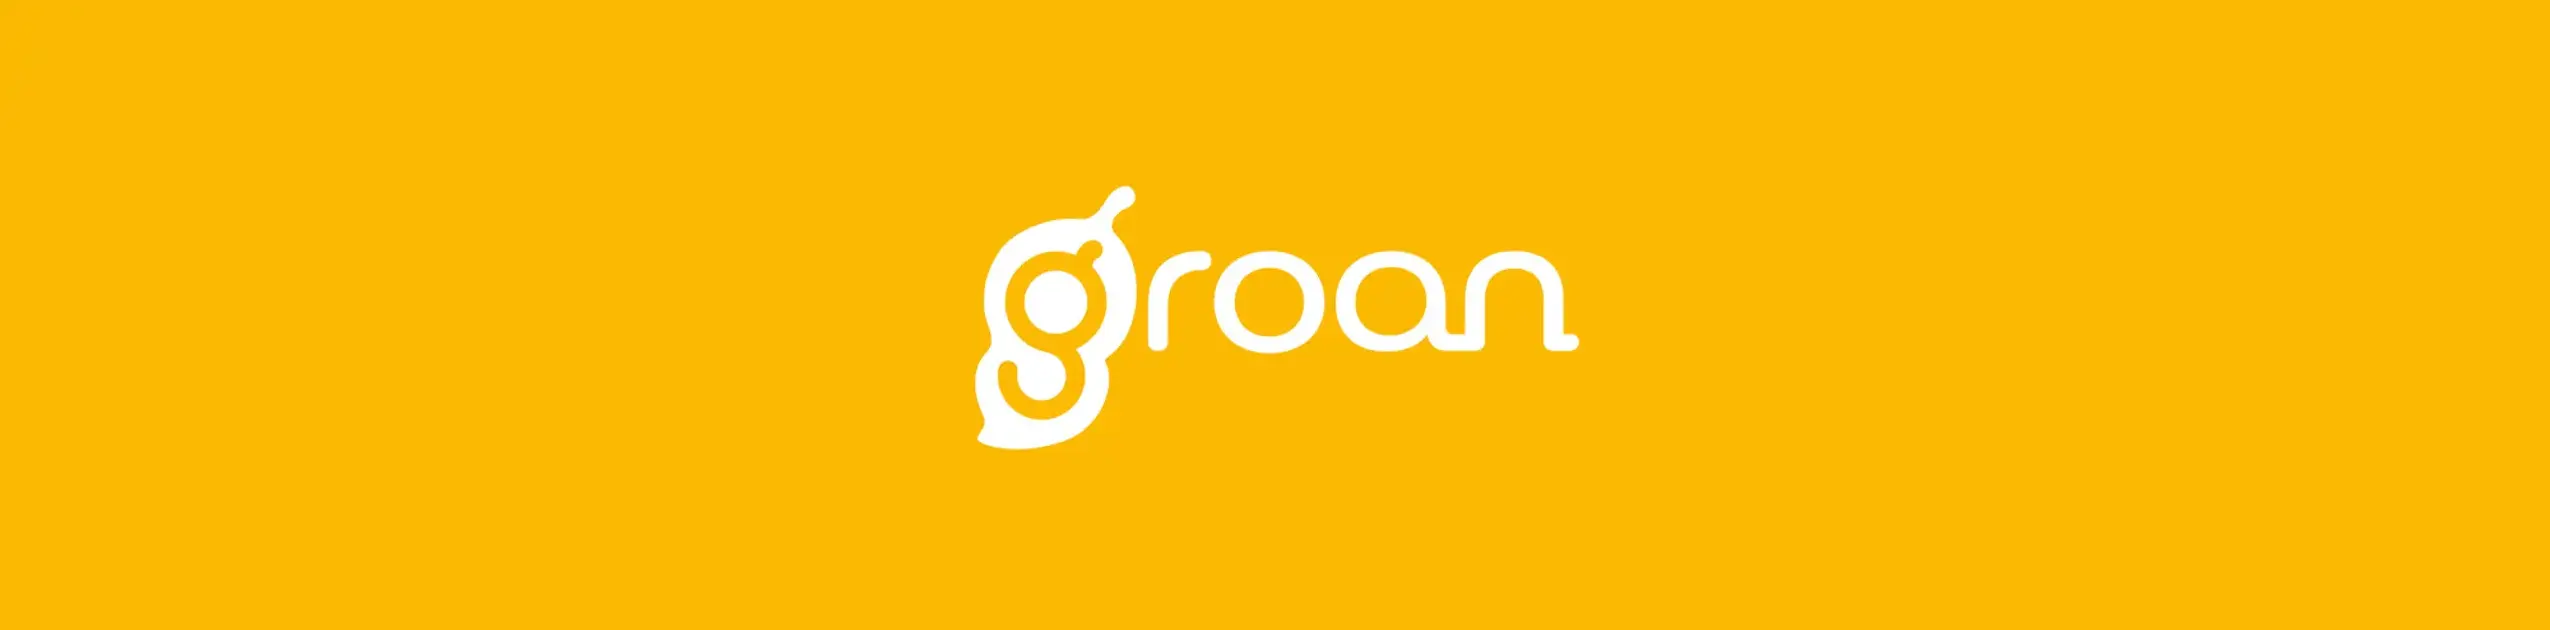 producten-Groan-02.png